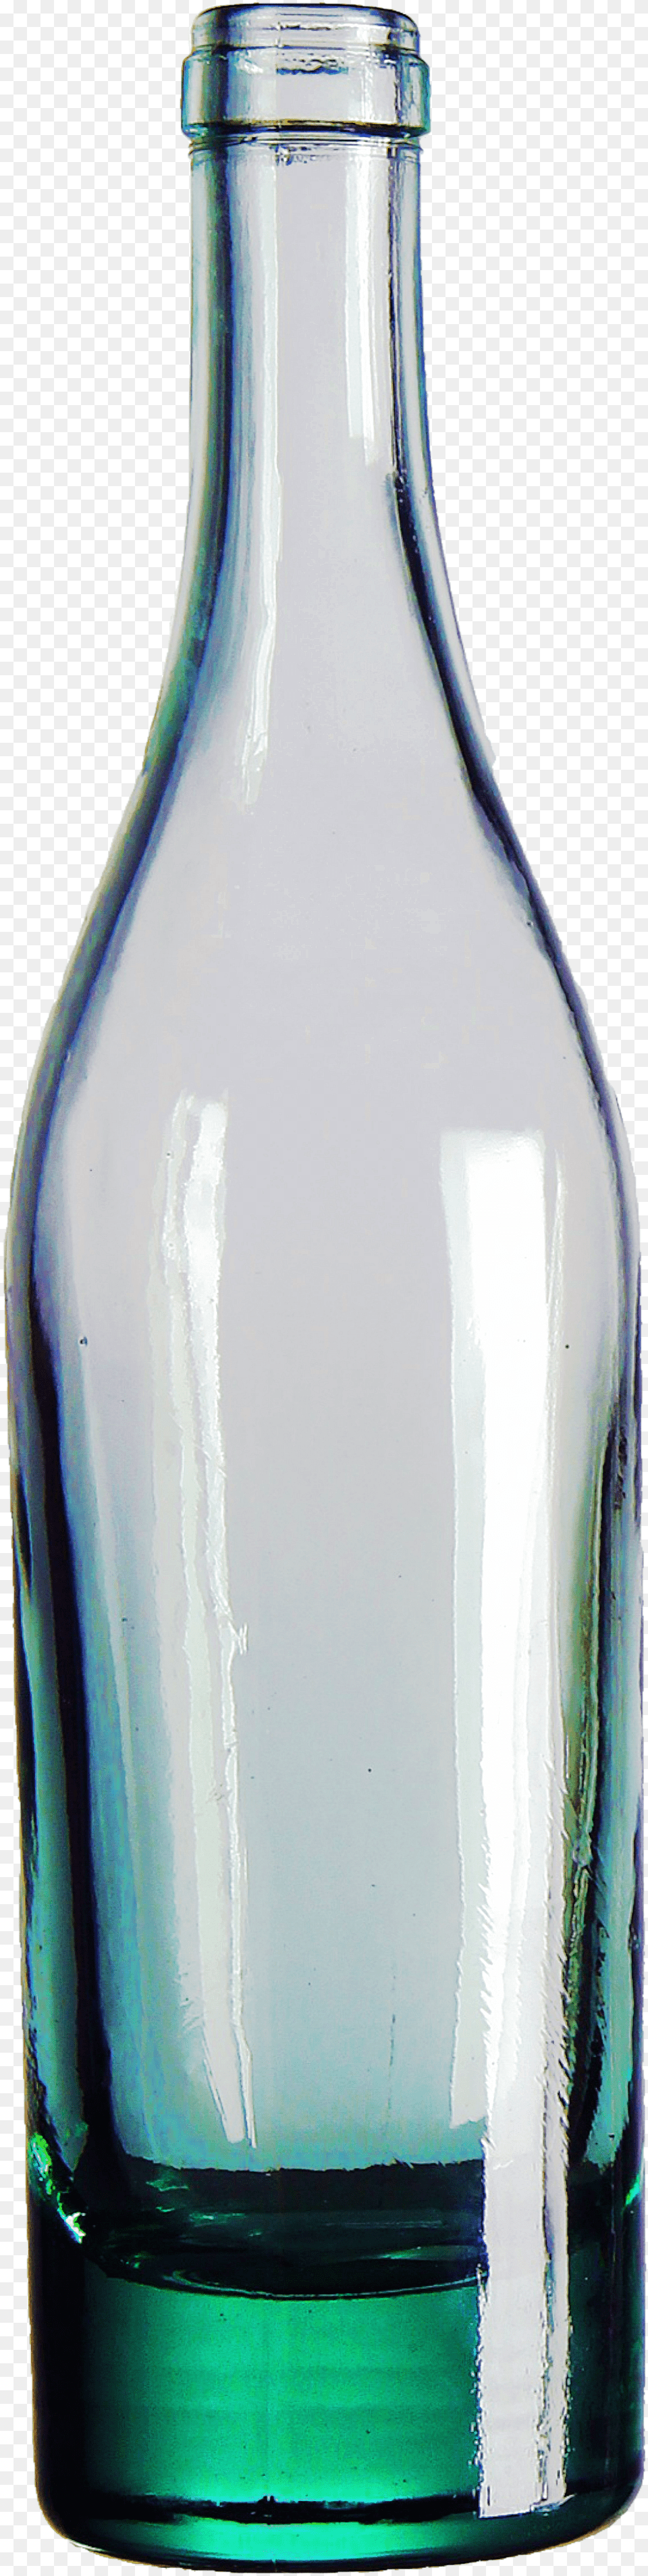 Mirror Bottle, Glass, Jar, Pottery, Vase Free Transparent Png